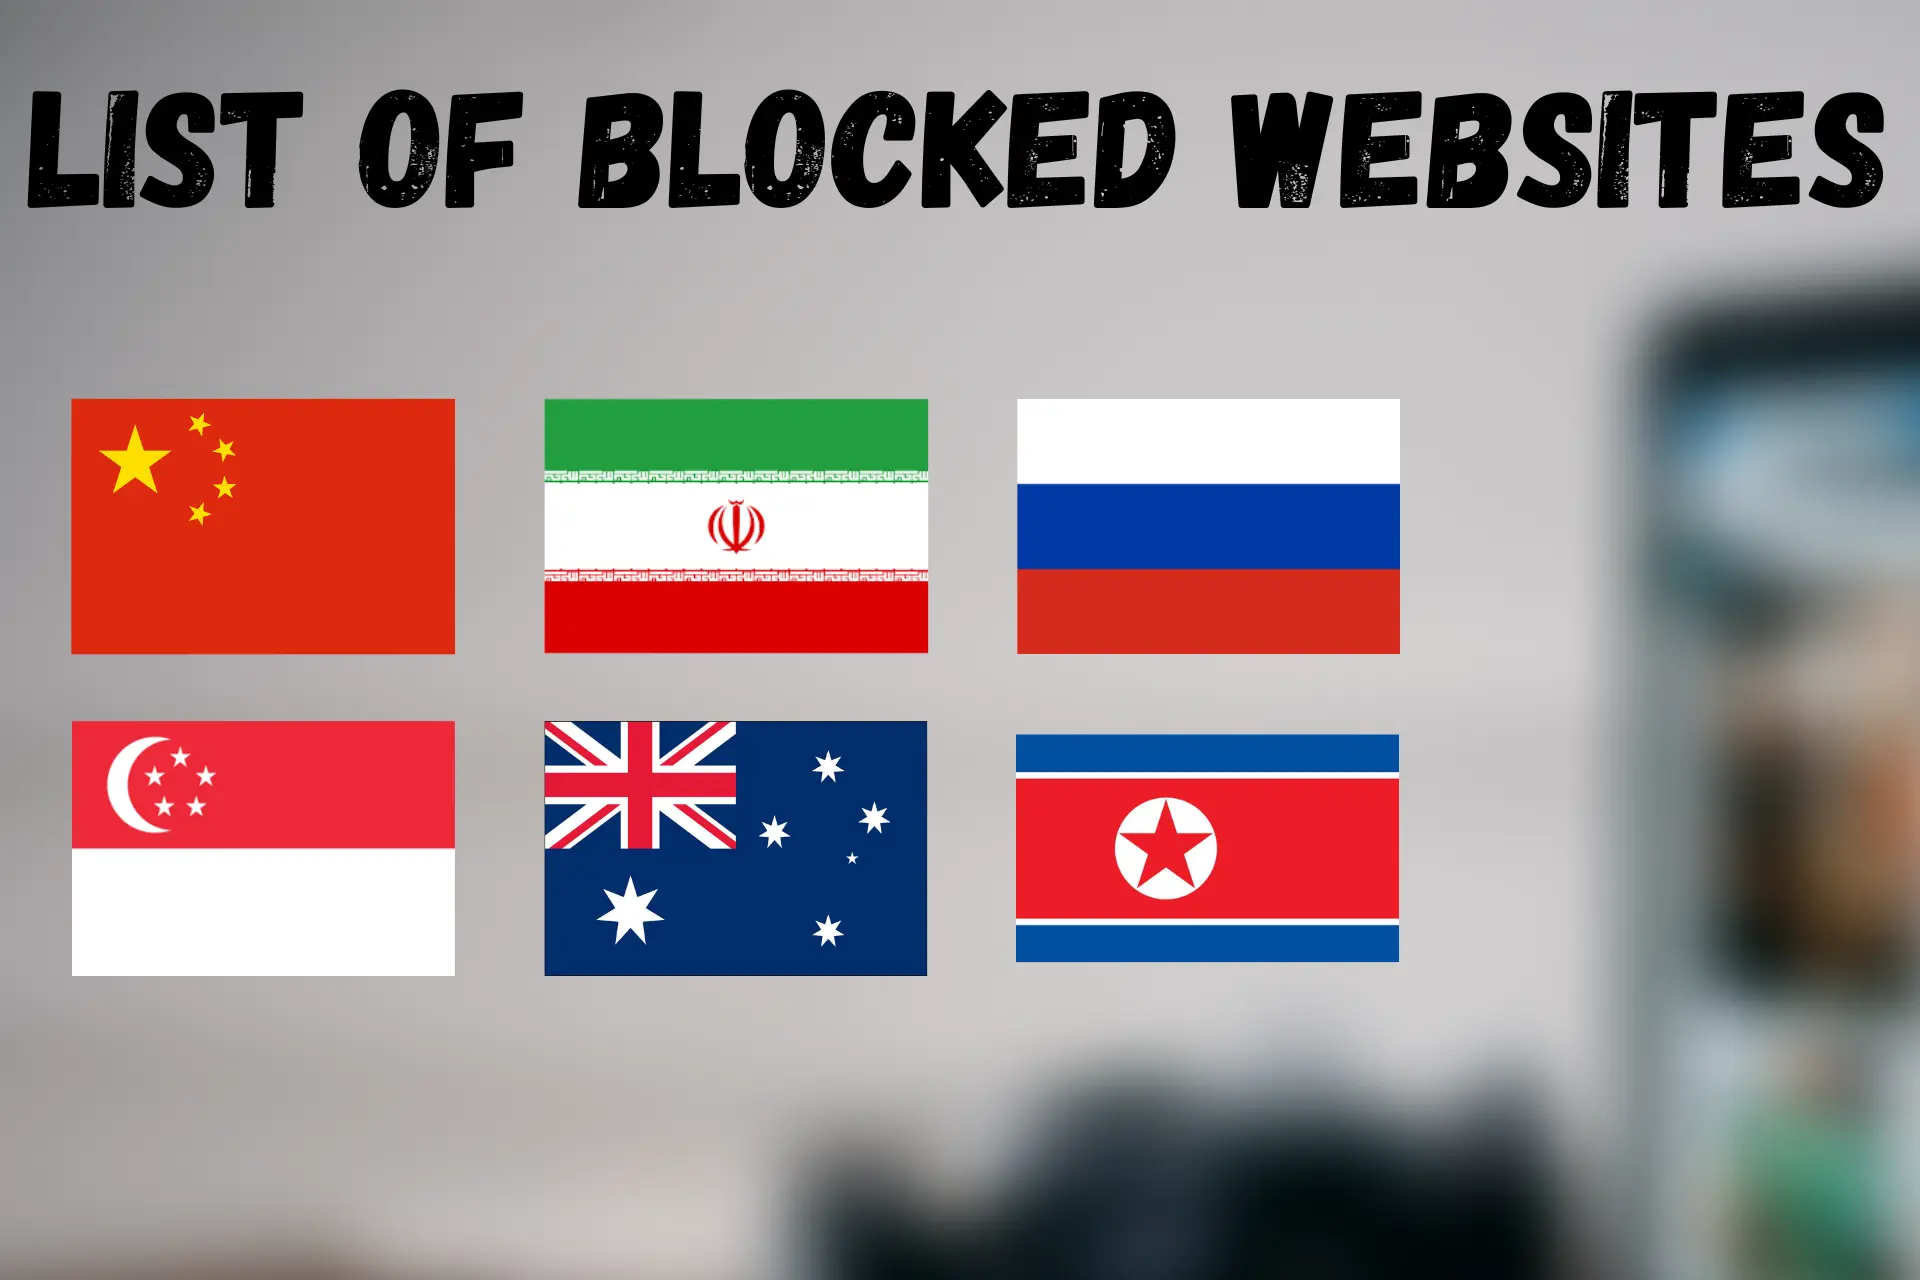 List of blocked websites